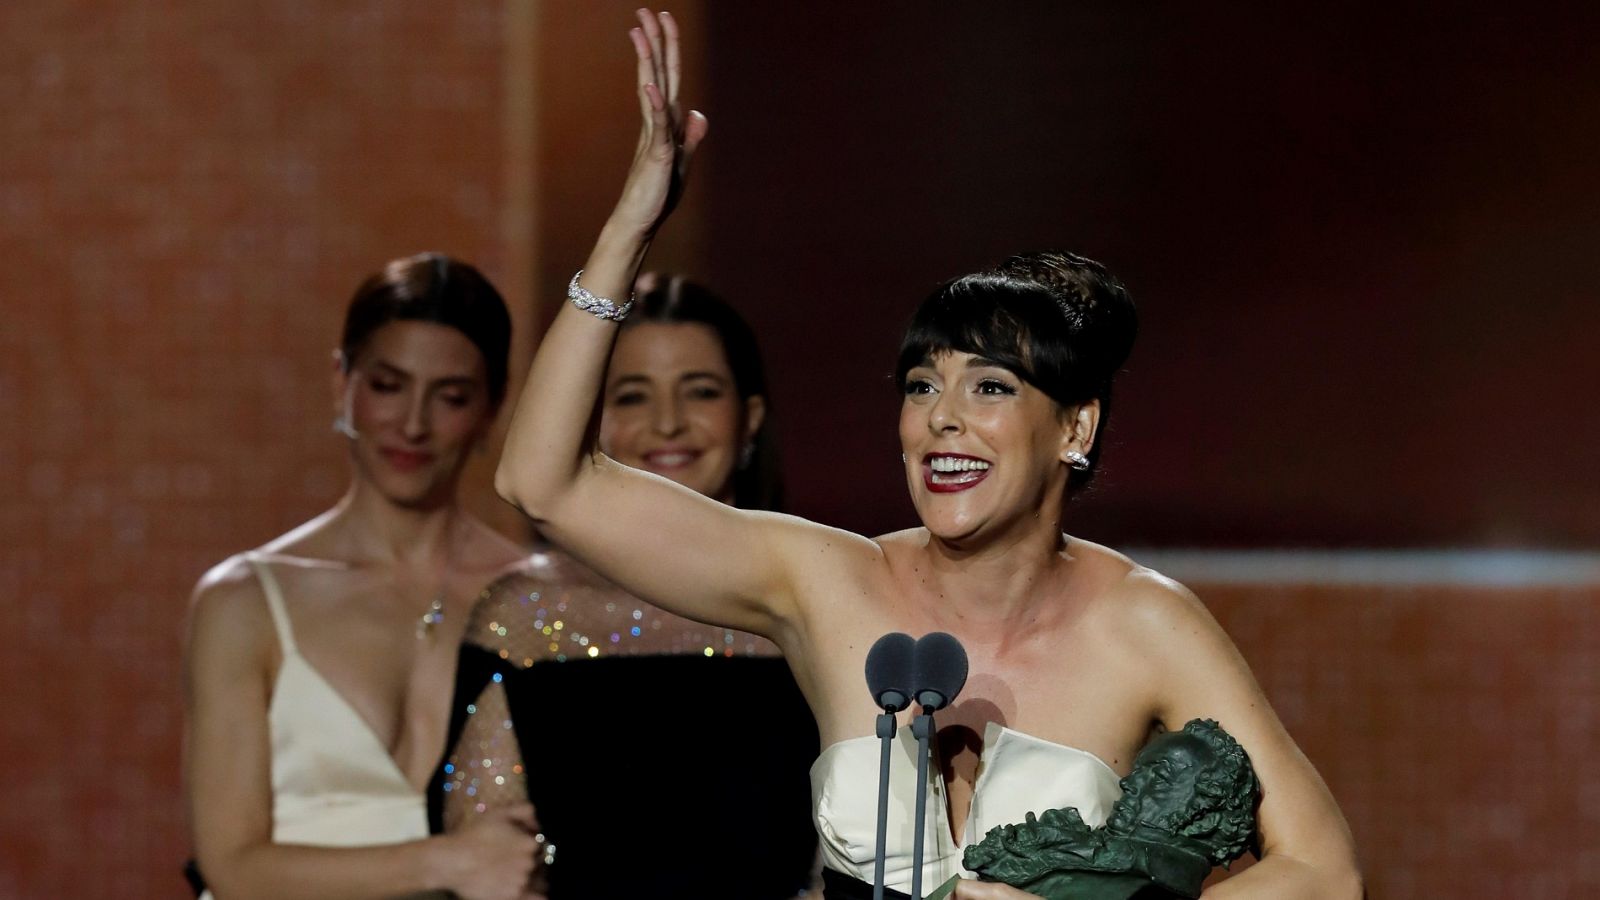 Premios Goya: Belén Cuesta, Goya a la mejor actriz protagonista: "Gracias por darme el personaje de mi vida" - RTVE.es